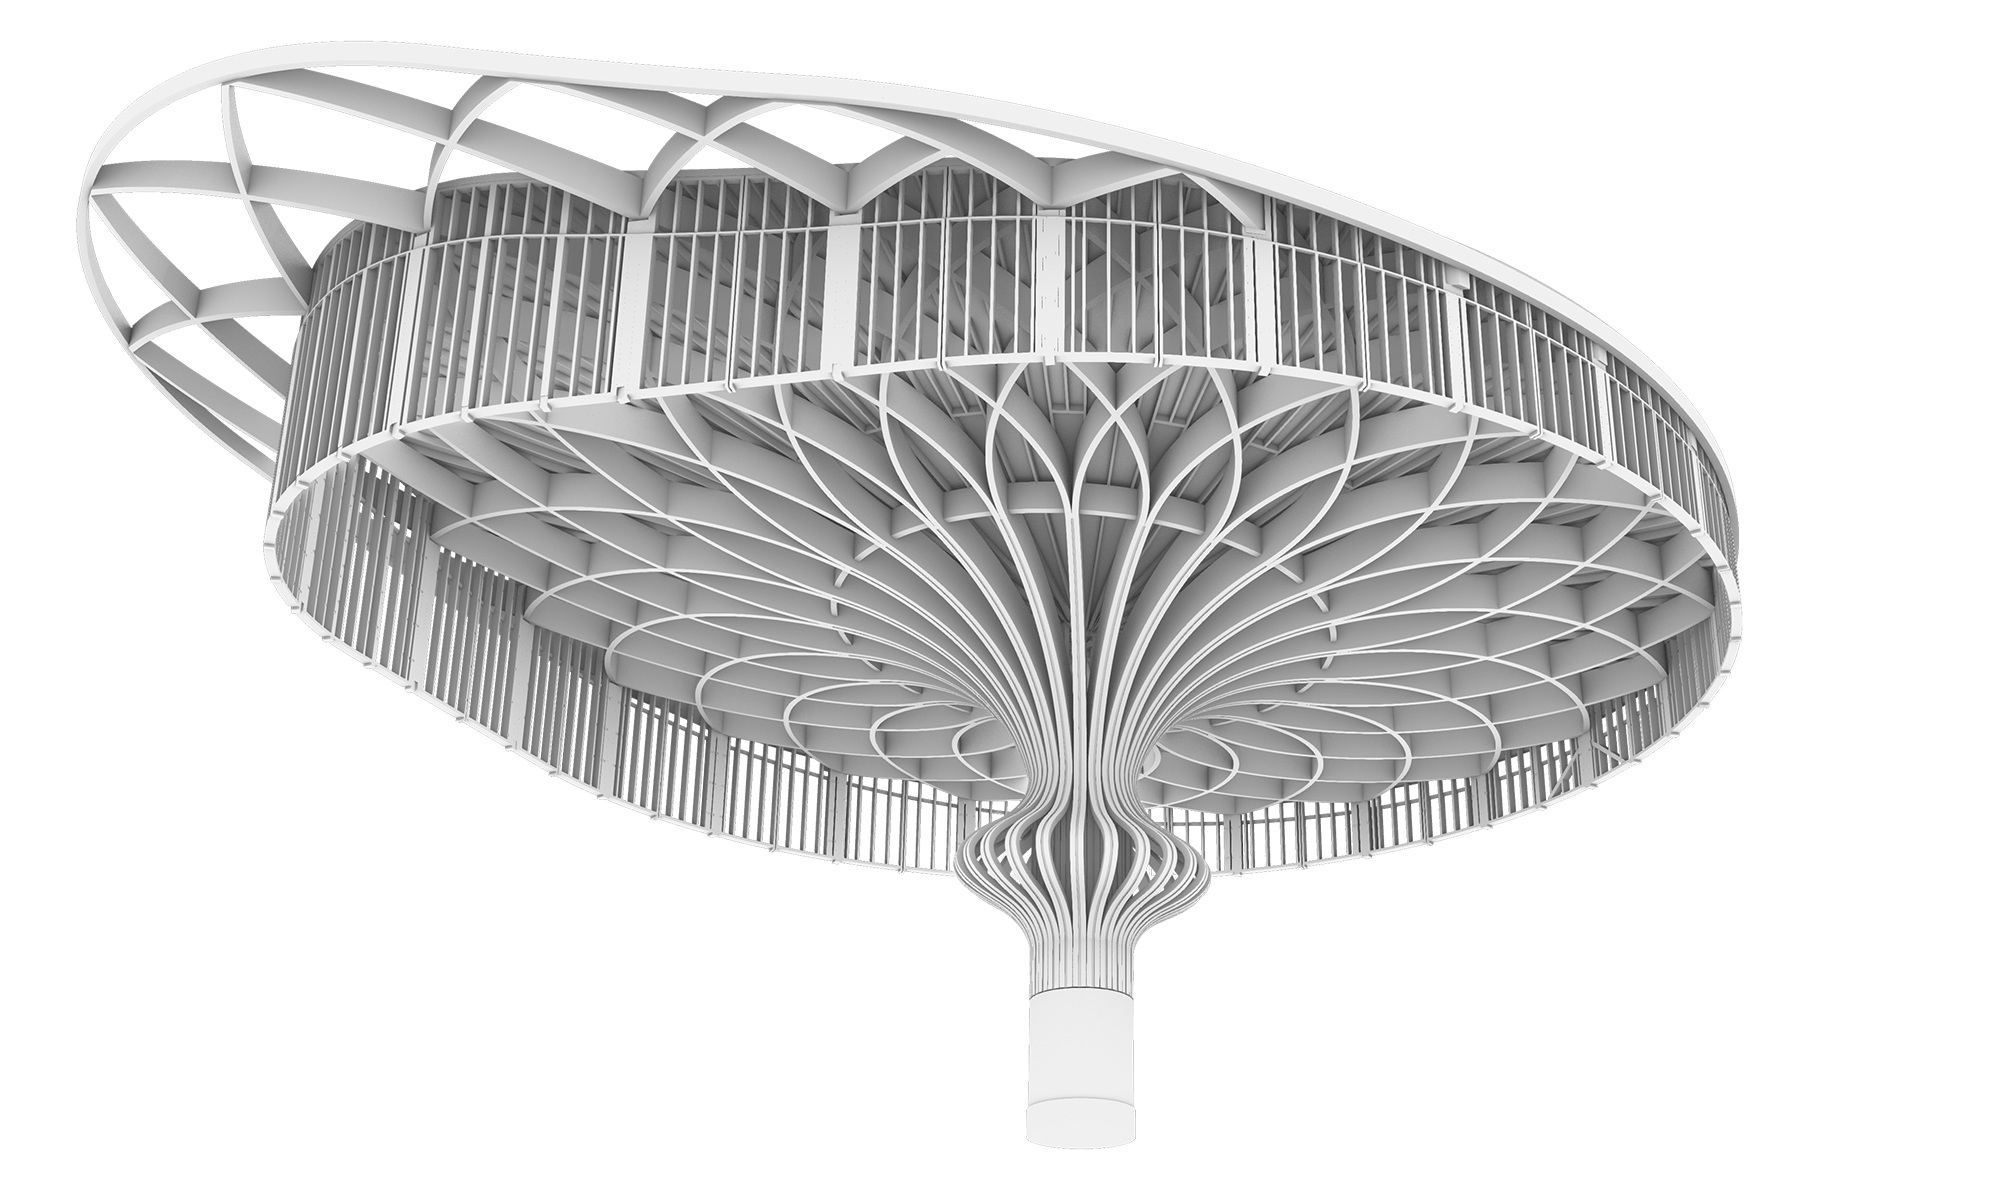 Detaillierte technische Zeichnung in Schwarz-Weiss der Tragstruktur des Neubaus Holland Casino Venlo